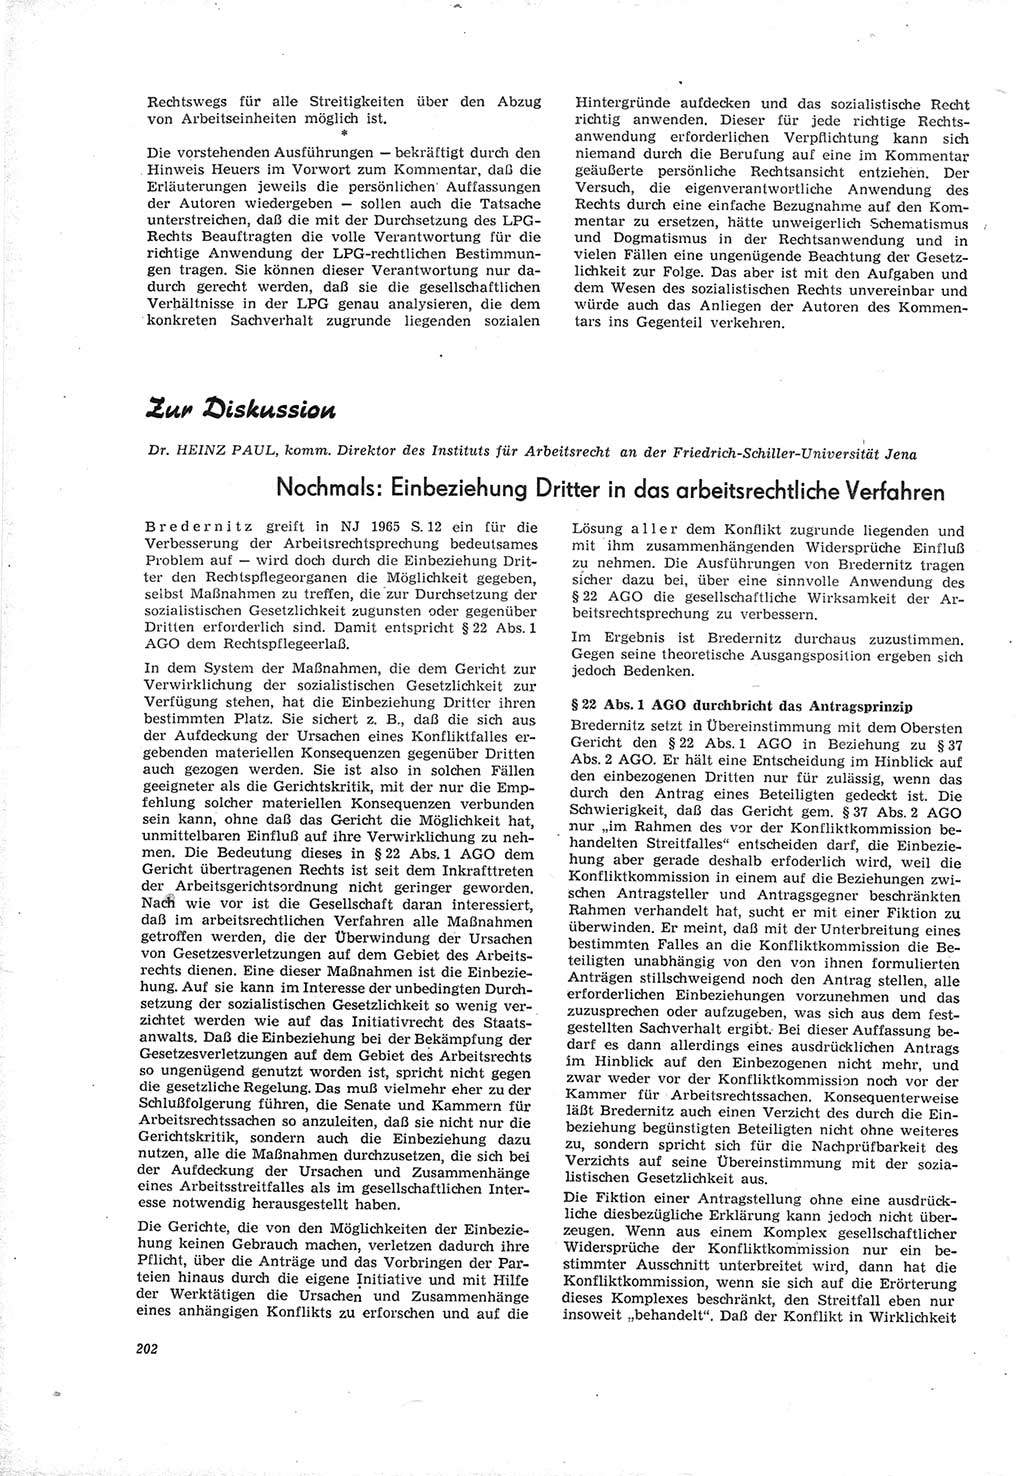 Neue Justiz (NJ), Zeitschrift für Recht und Rechtswissenschaft [Deutsche Demokratische Republik (DDR)], 19. Jahrgang 1965, Seite 202 (NJ DDR 1965, S. 202)